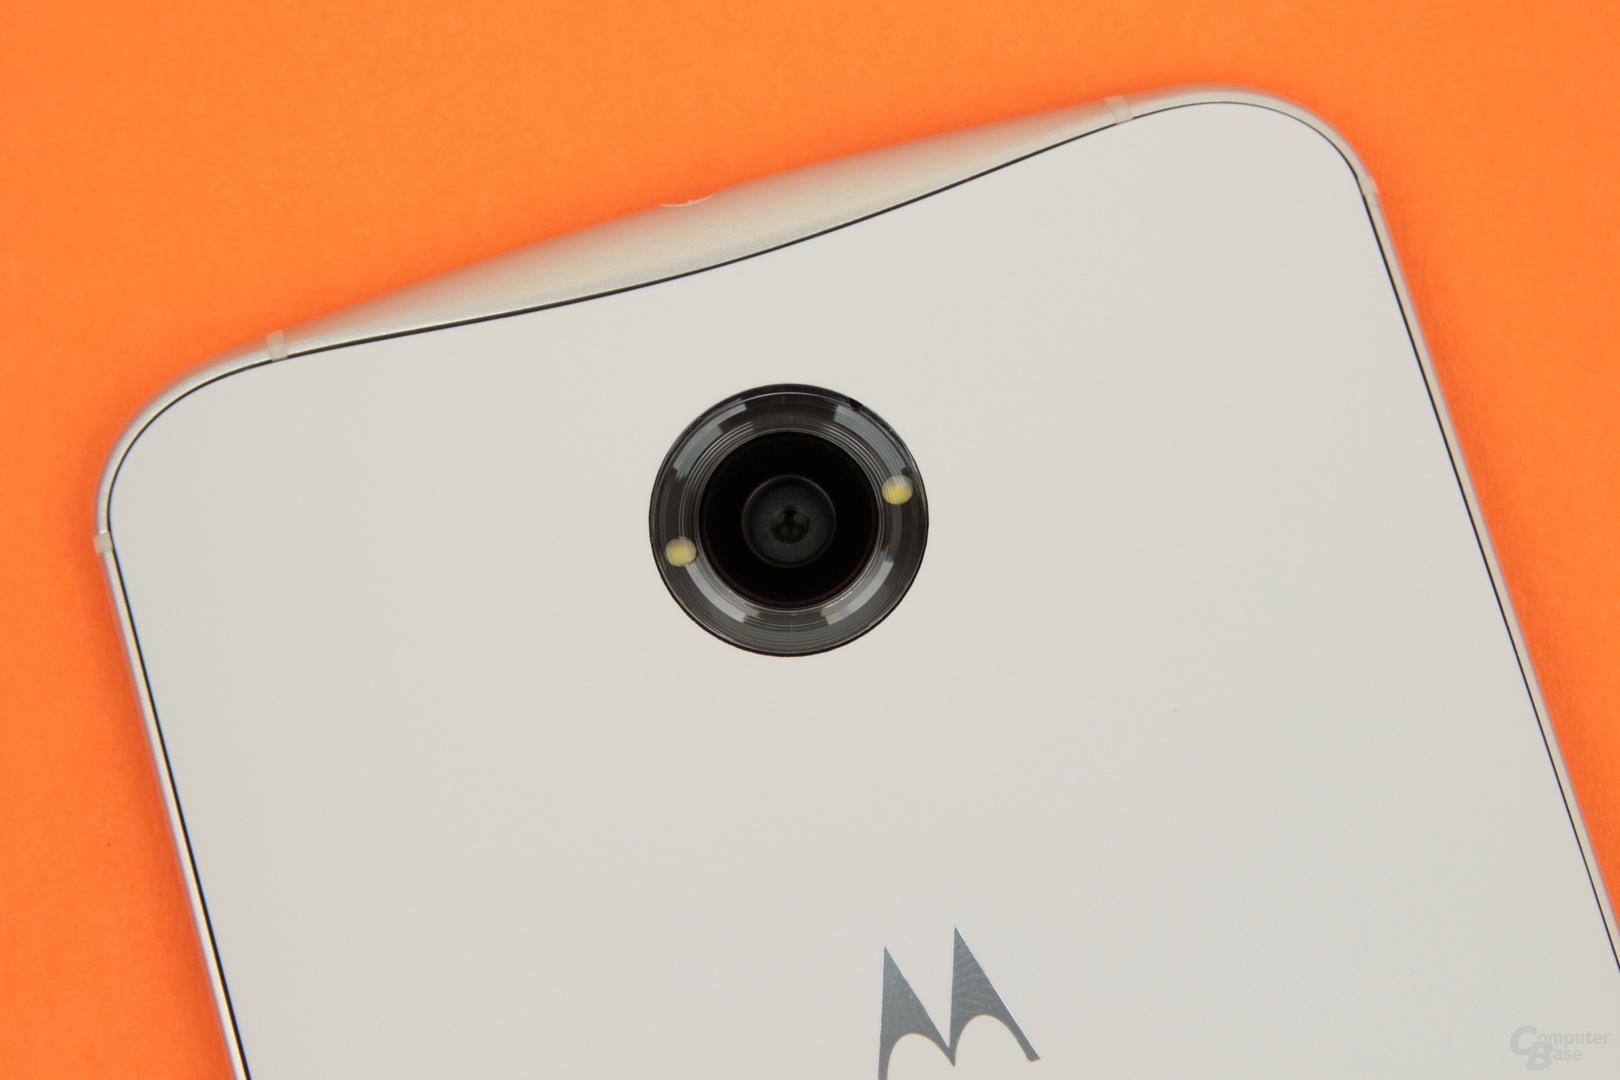 Google Nexus 6: Jetzt mit 13-Megapixel-Kamera und Dual-LED-Blitz in Ringanordnung